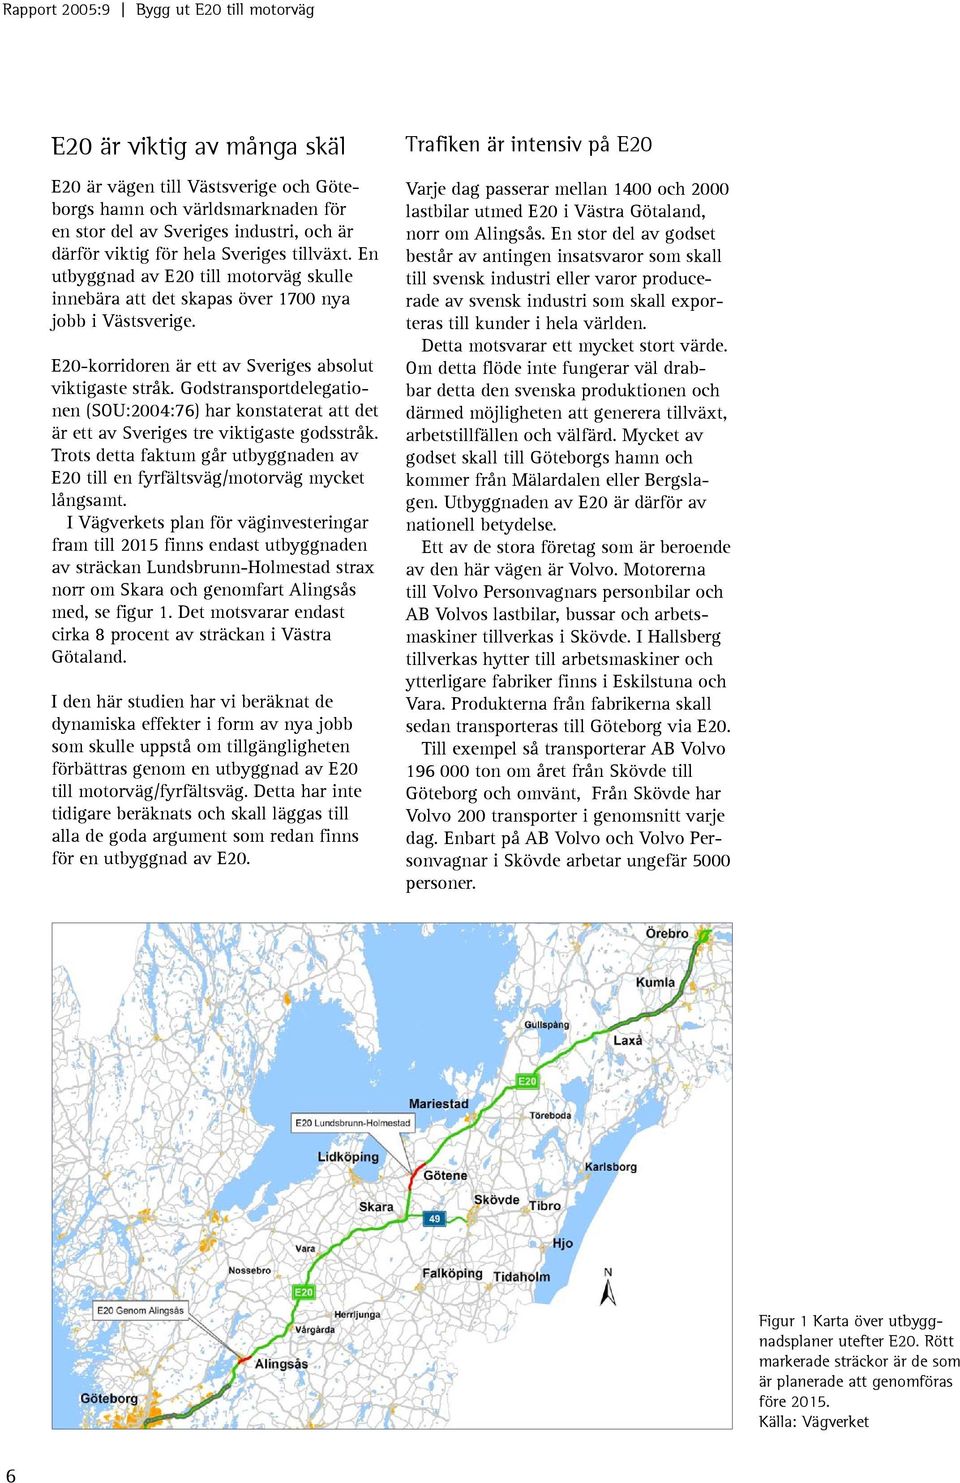 Godstransportdelegationen (SOU:2004:76) har konstaterat att det är ett av Sveriges tre viktigaste godsstråk. Trots detta faktum går utbyggnaden av E20 till en fyrfältsväg/motorväg mycket långsamt.